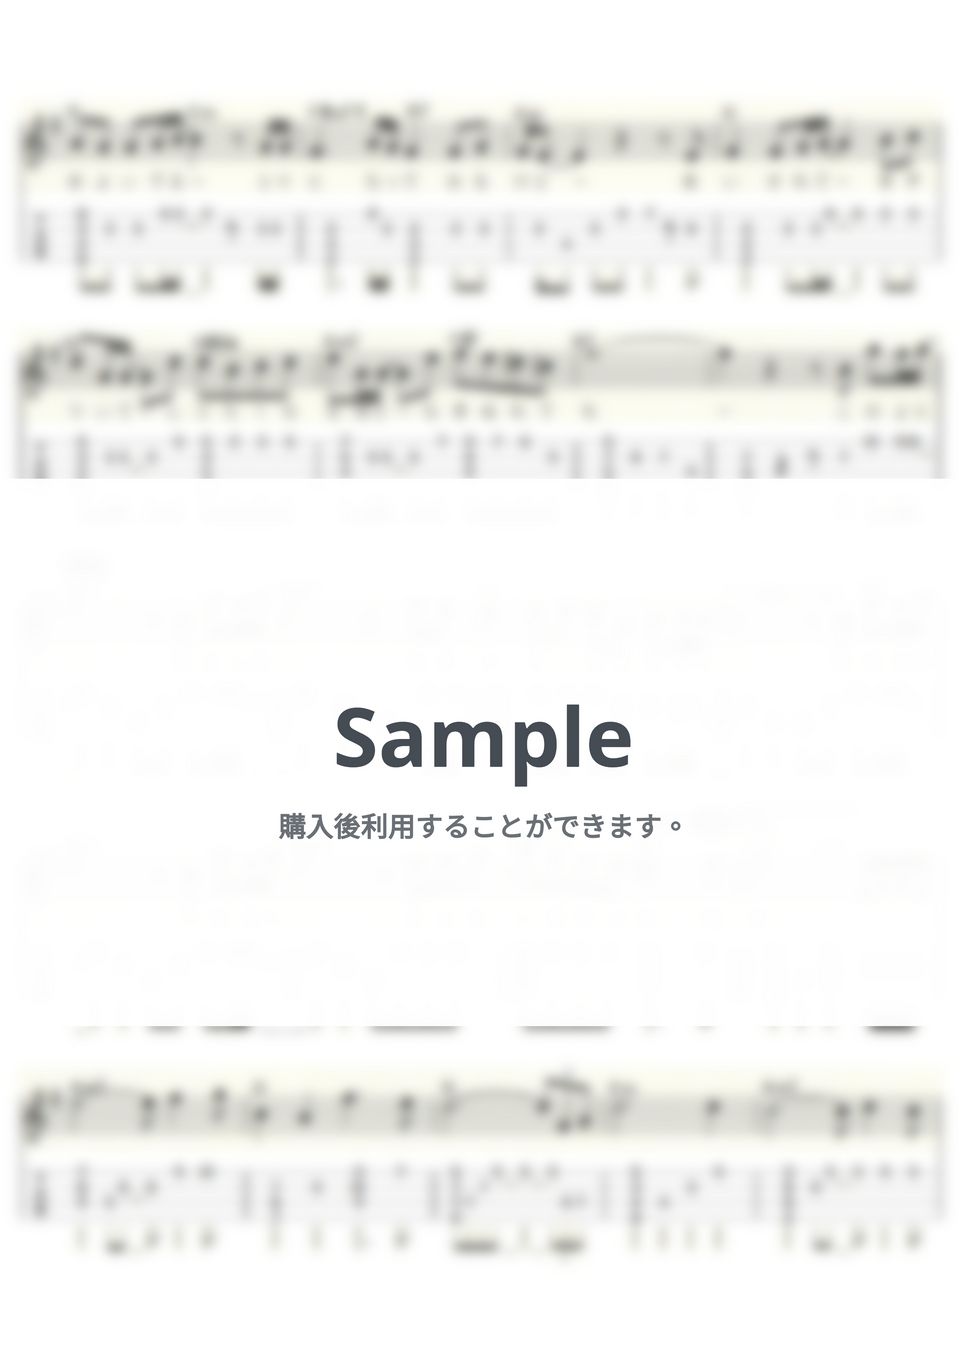 テレサ・テン - 恋人たちの神話 (ｳｸﾚﾚｿﾛ/High-G・Low-G/中級) by ukulelepapa